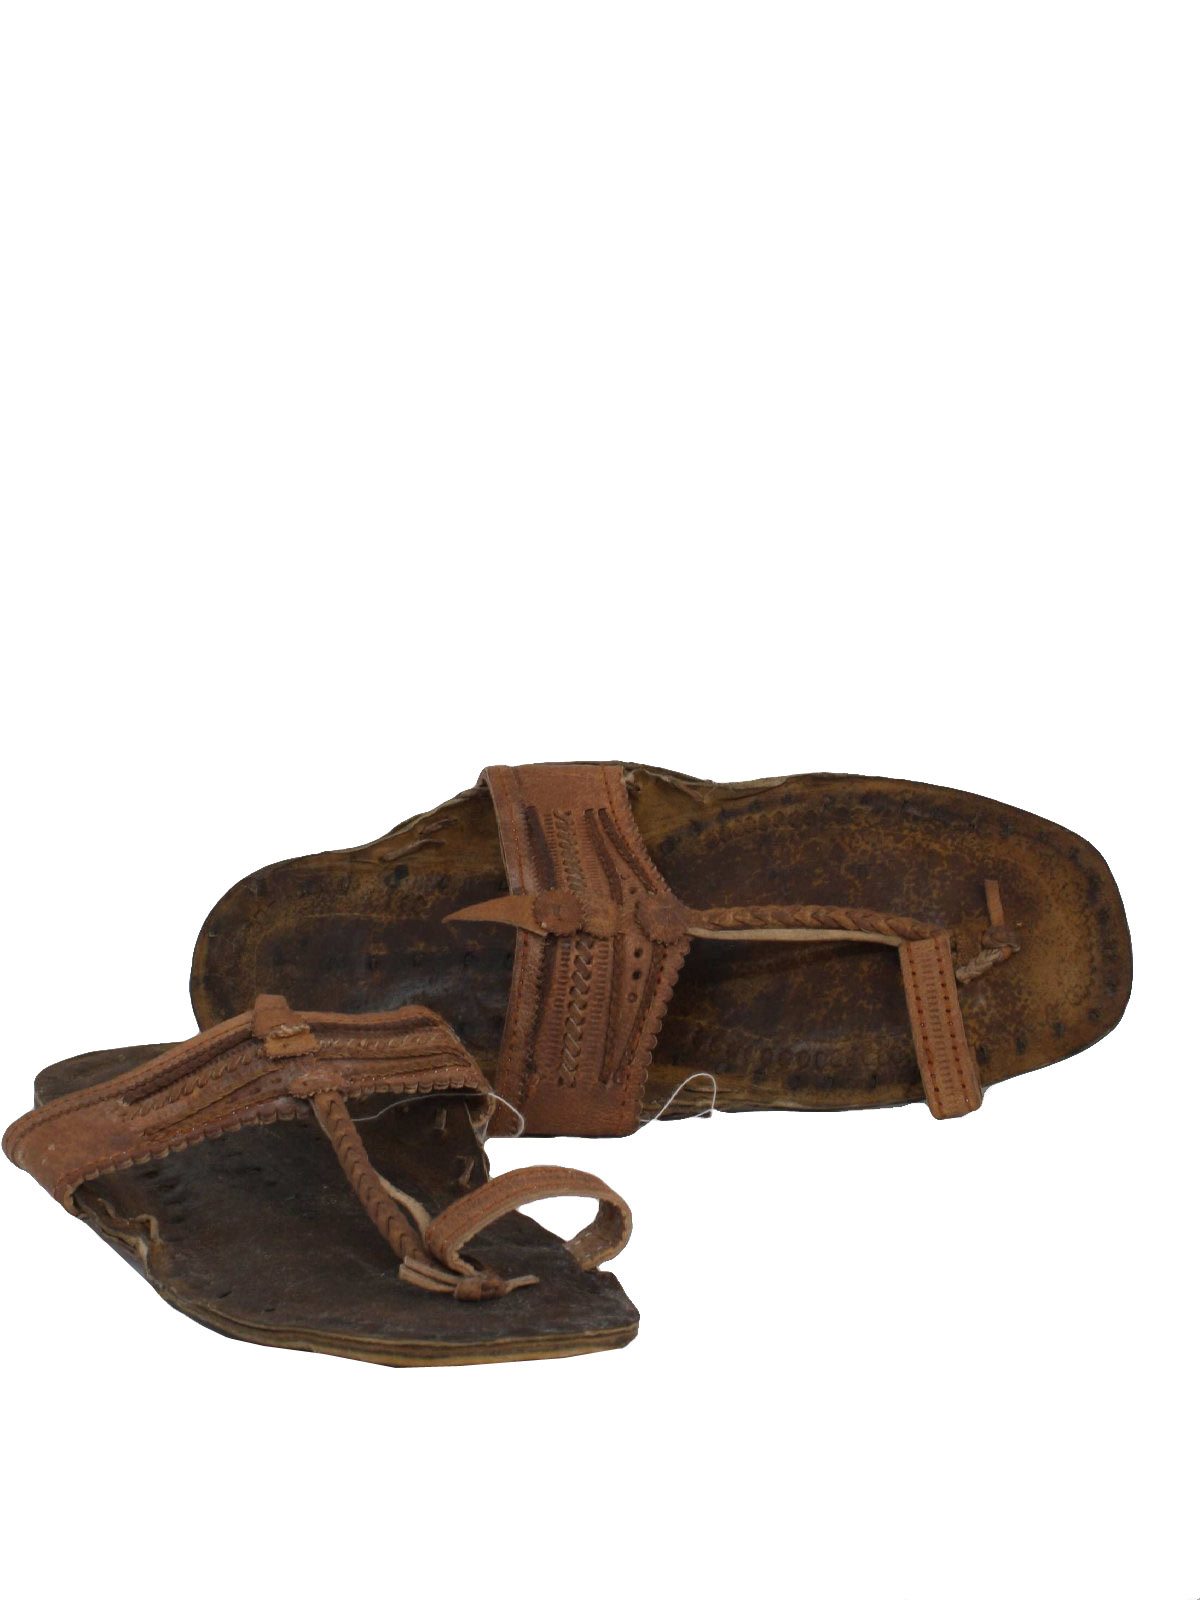 1970 s unisex accessories unisex leather hippie jesus sandal shoes 70s ...